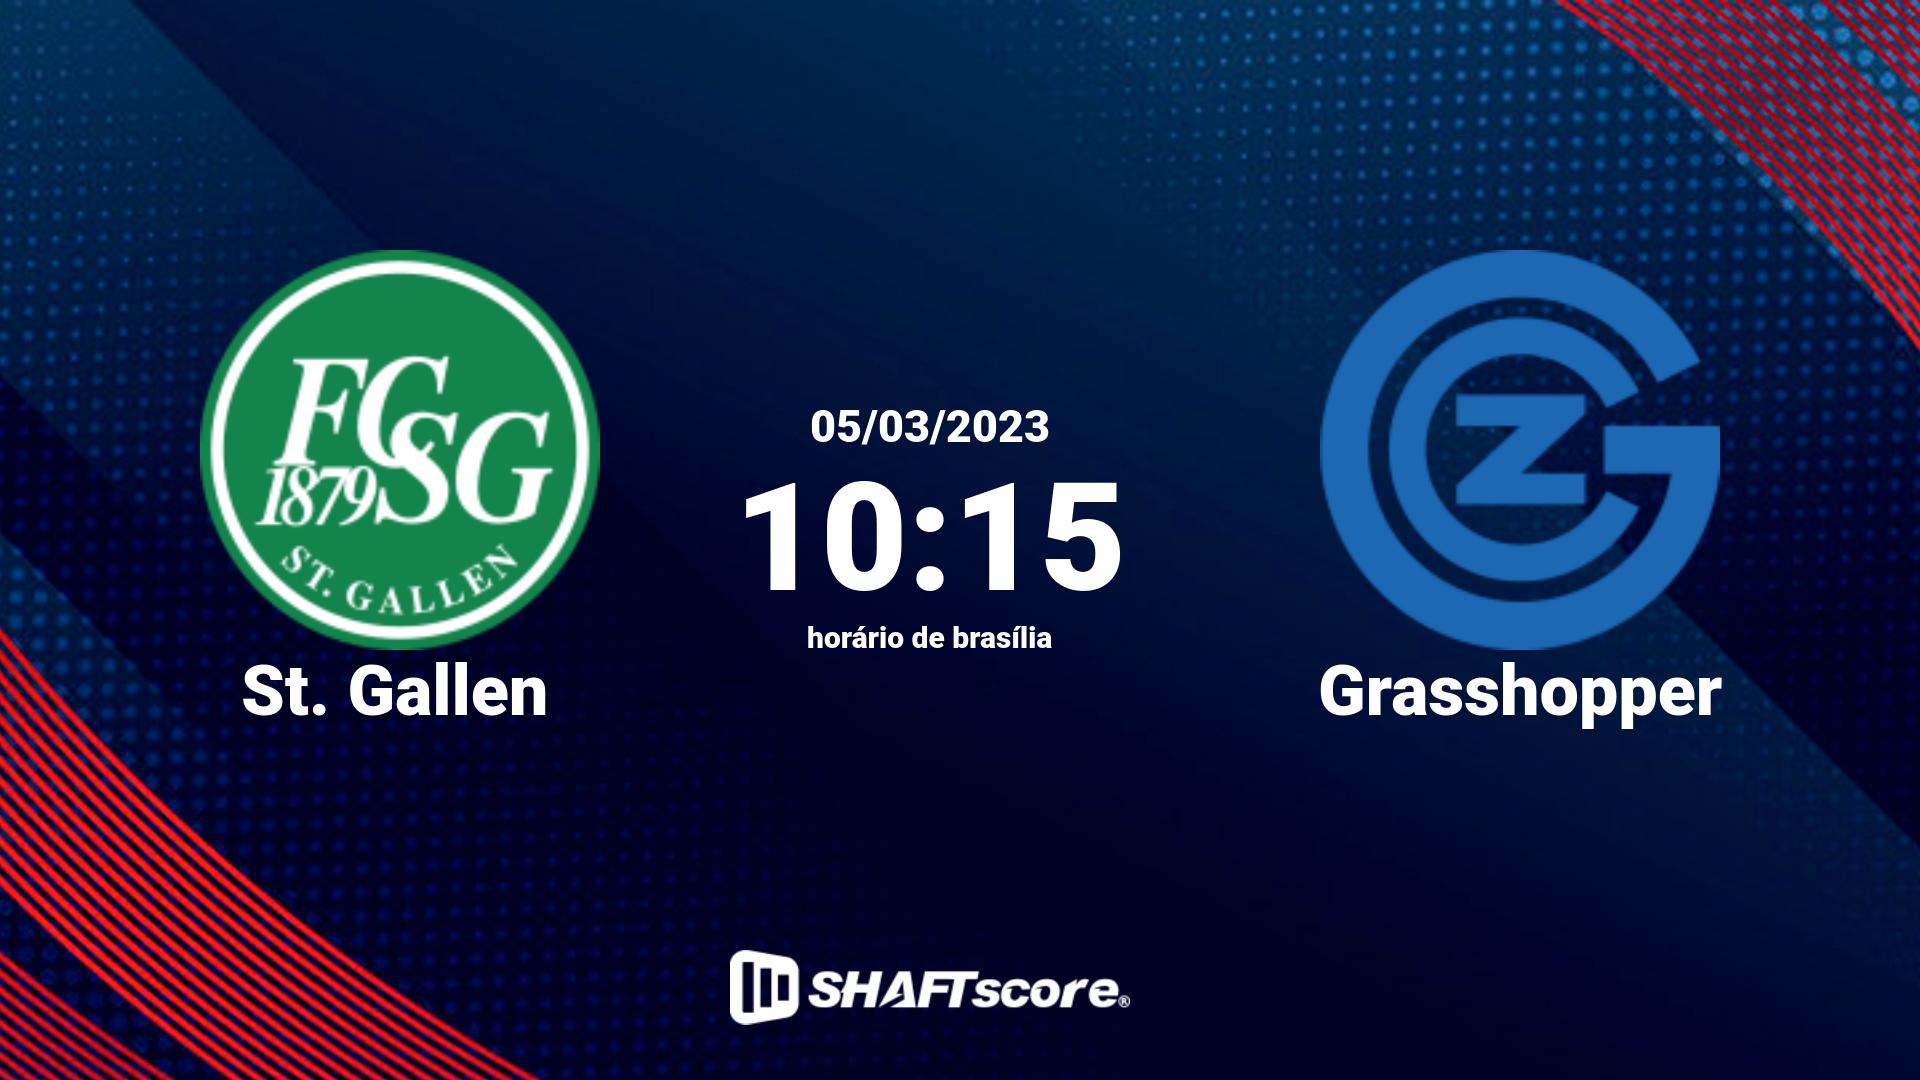 Estatísticas do jogo St. Gallen vs Grasshopper 05.03 10:15